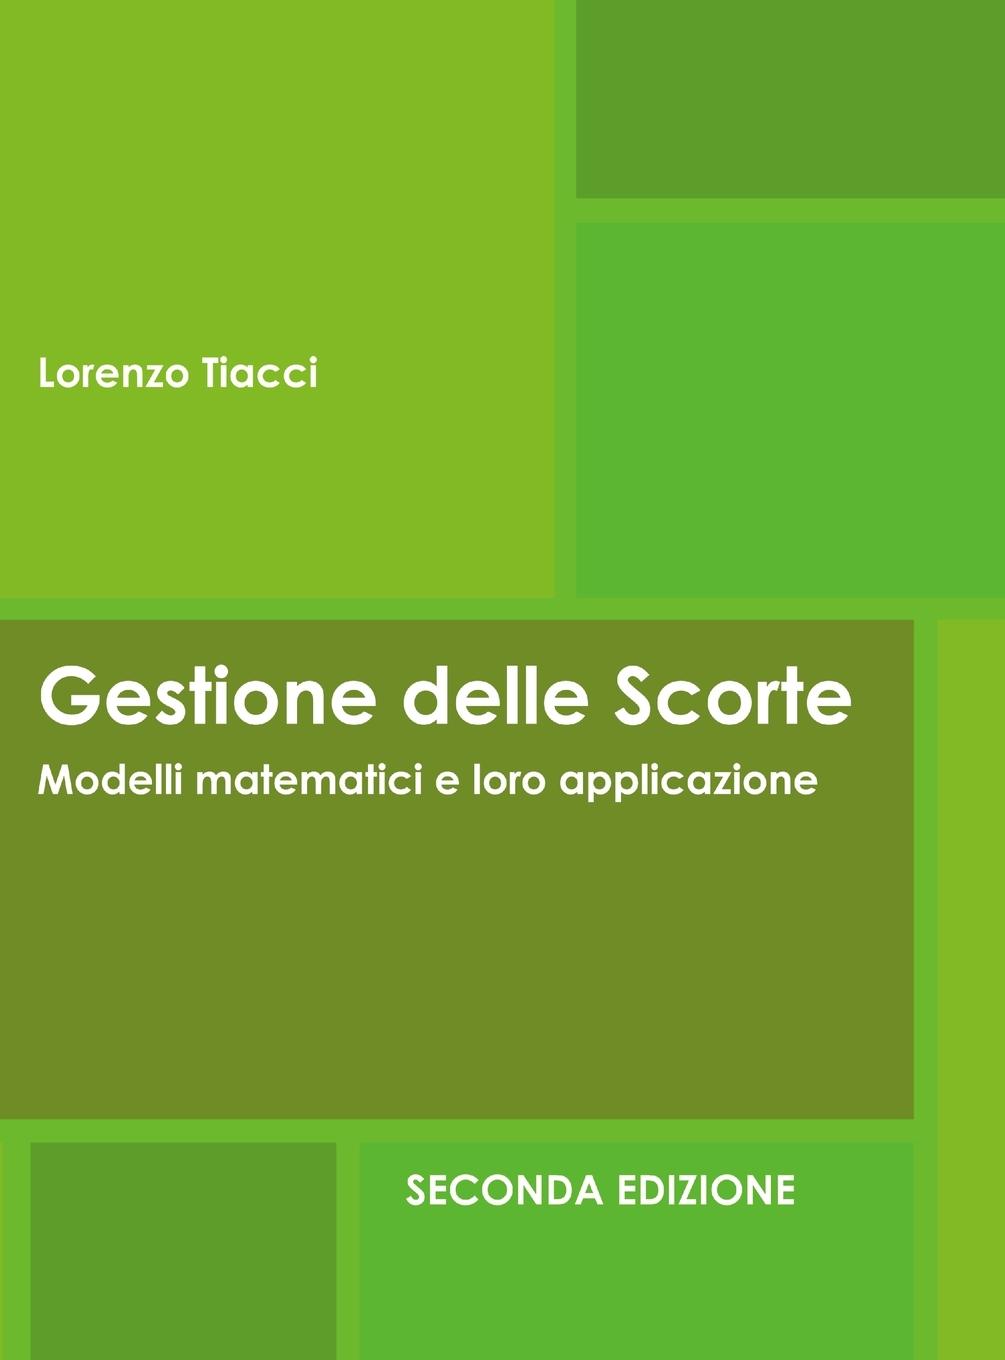 Carte Gestione delle Scorte - Modelli matematici e loro applicazione - Seconda Edizione 